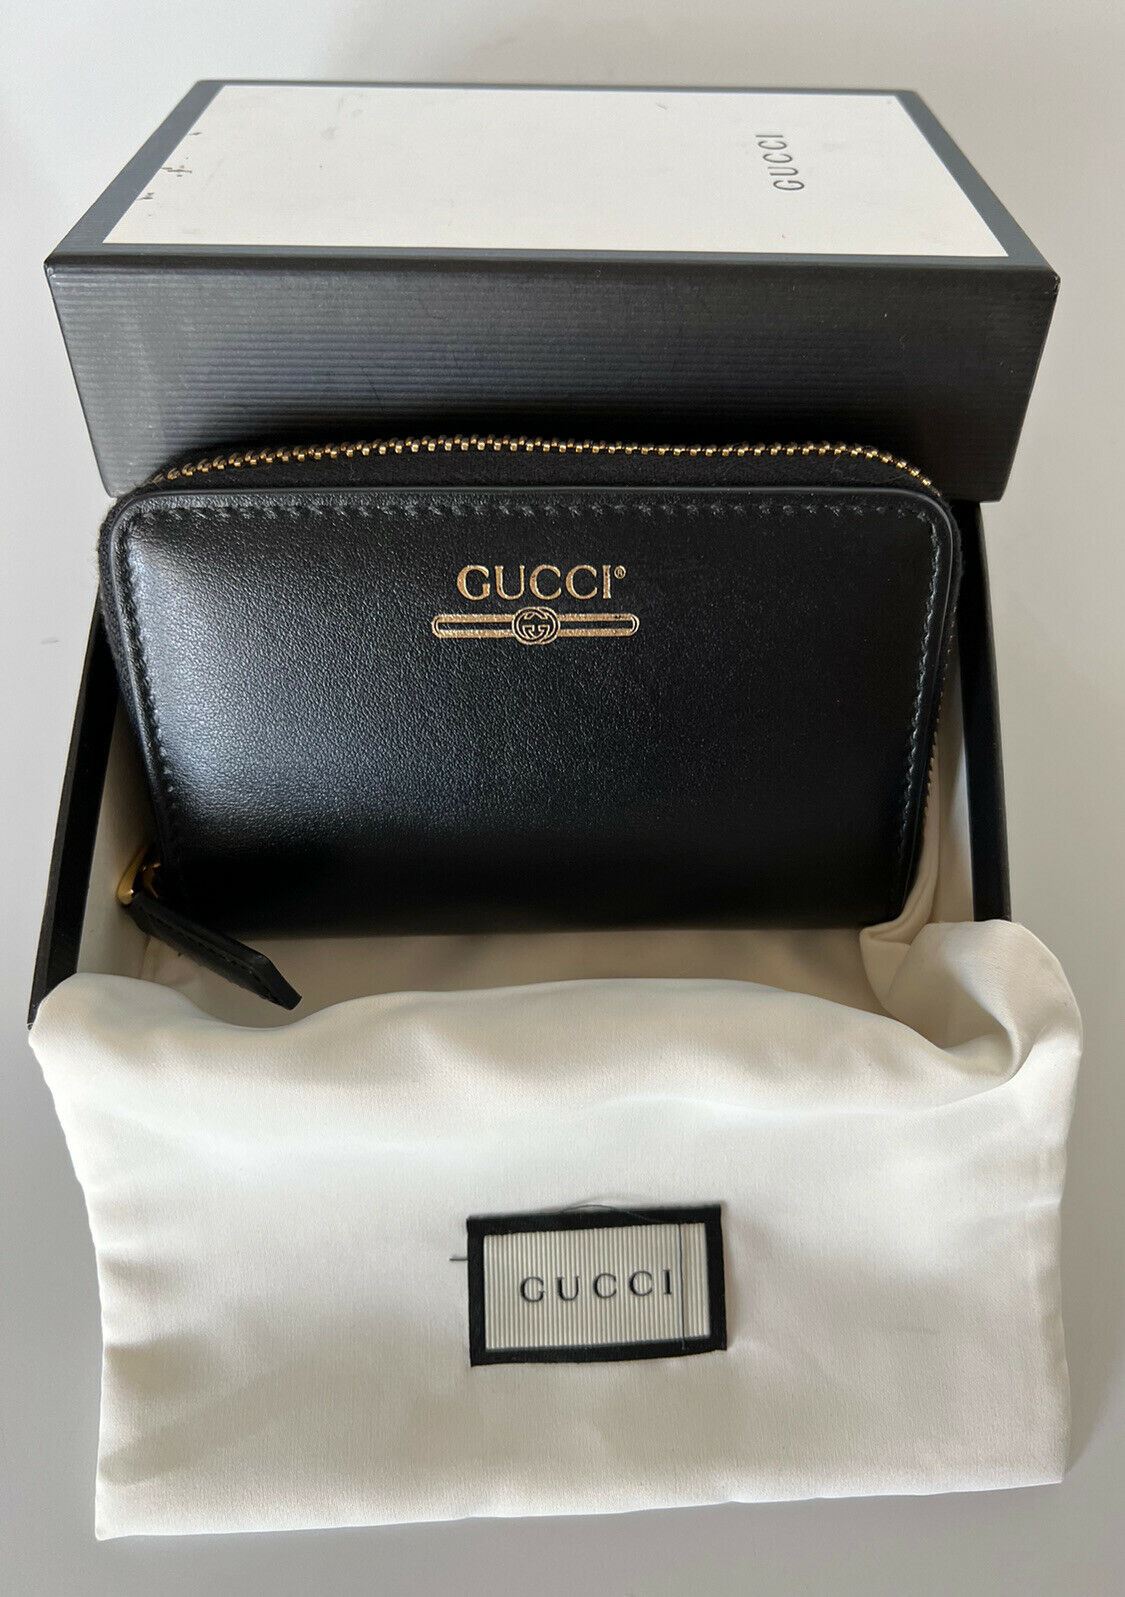 Neu mit Etikett: Gucci G Web Gucci Print Kartenetui mit umlaufendem Reißverschluss, hergestellt in Italien, 547597 